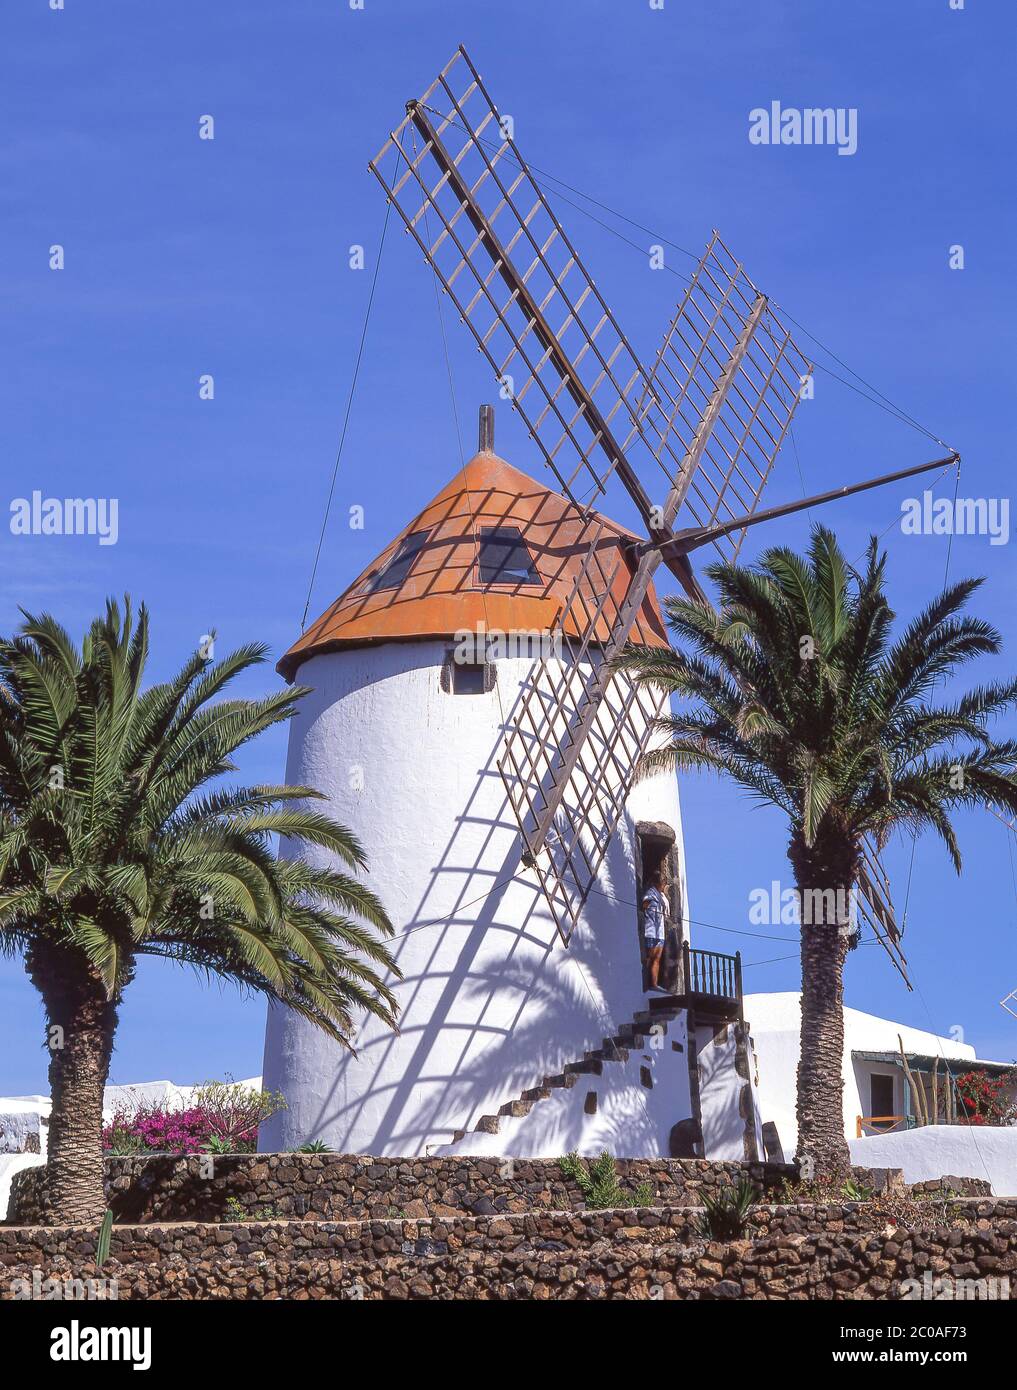 Windmühle im Museo Agrícola El Patio (Landwirtschaftsmuseum), Tiagua, Teguise, Lanzarote, Kanarische Inseln, Spanien Stockfoto